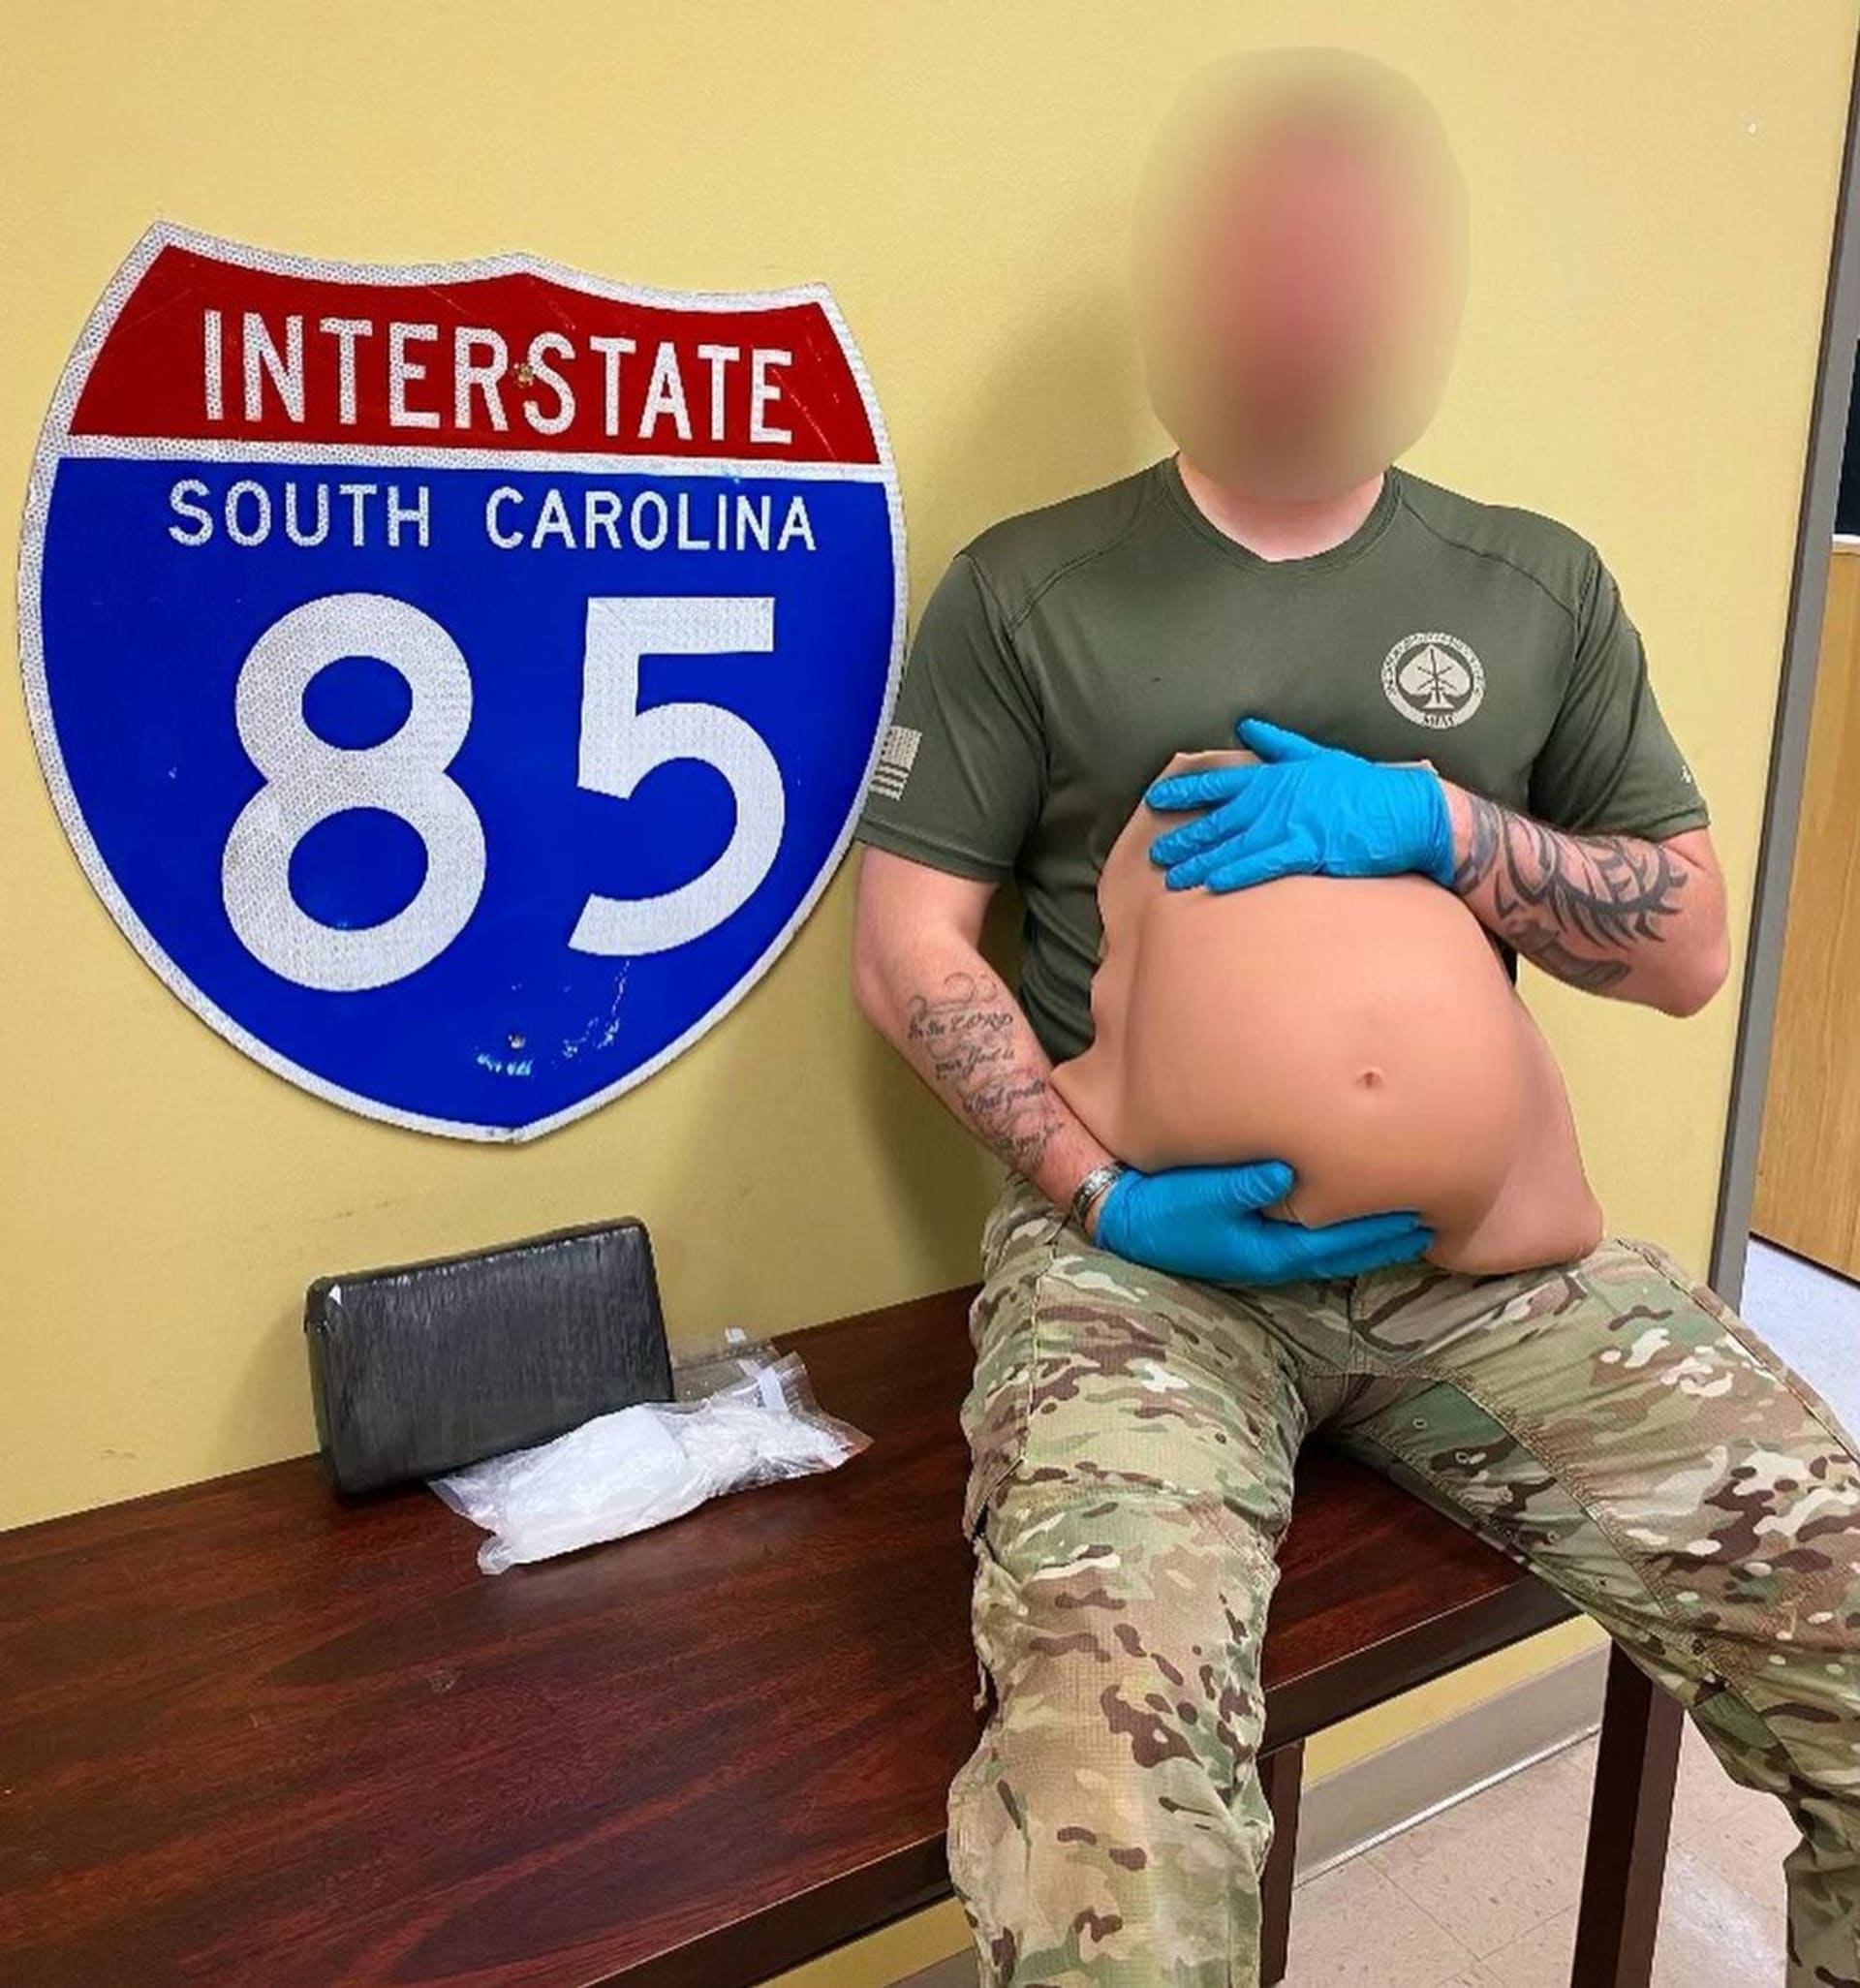 Policie zveřejnila fotografii falešného těhotenského břicha, ve kterém žena v Severní Karolíně pašovala kokain.